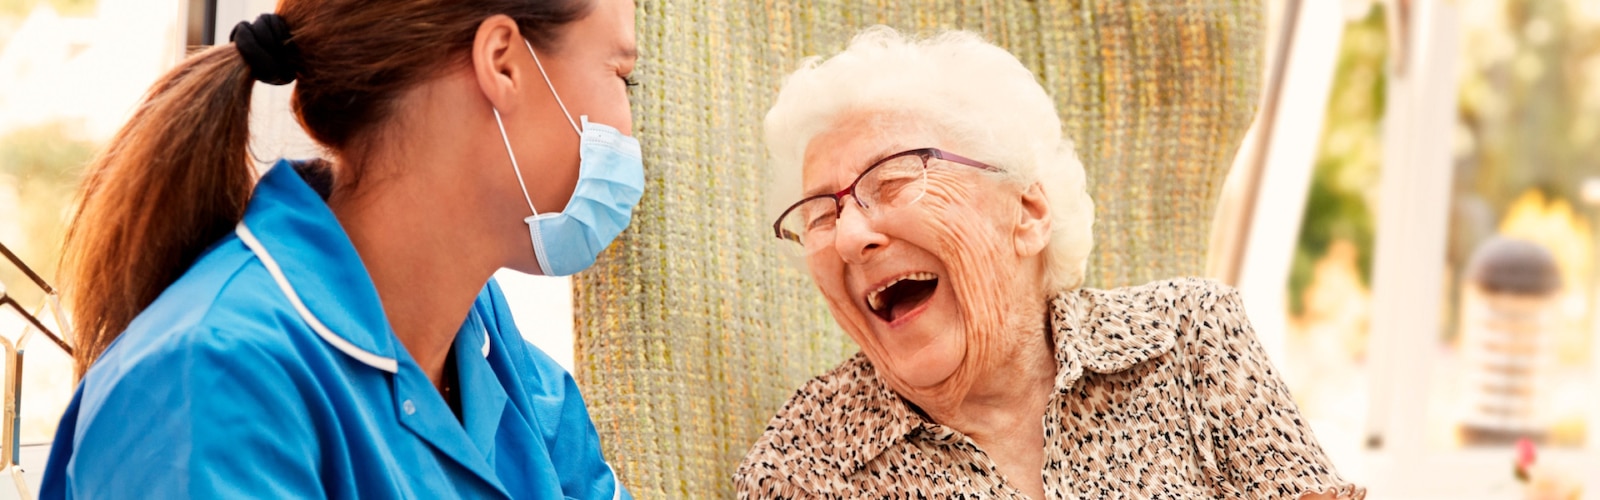 Enfermera y mujer mayor riéndose